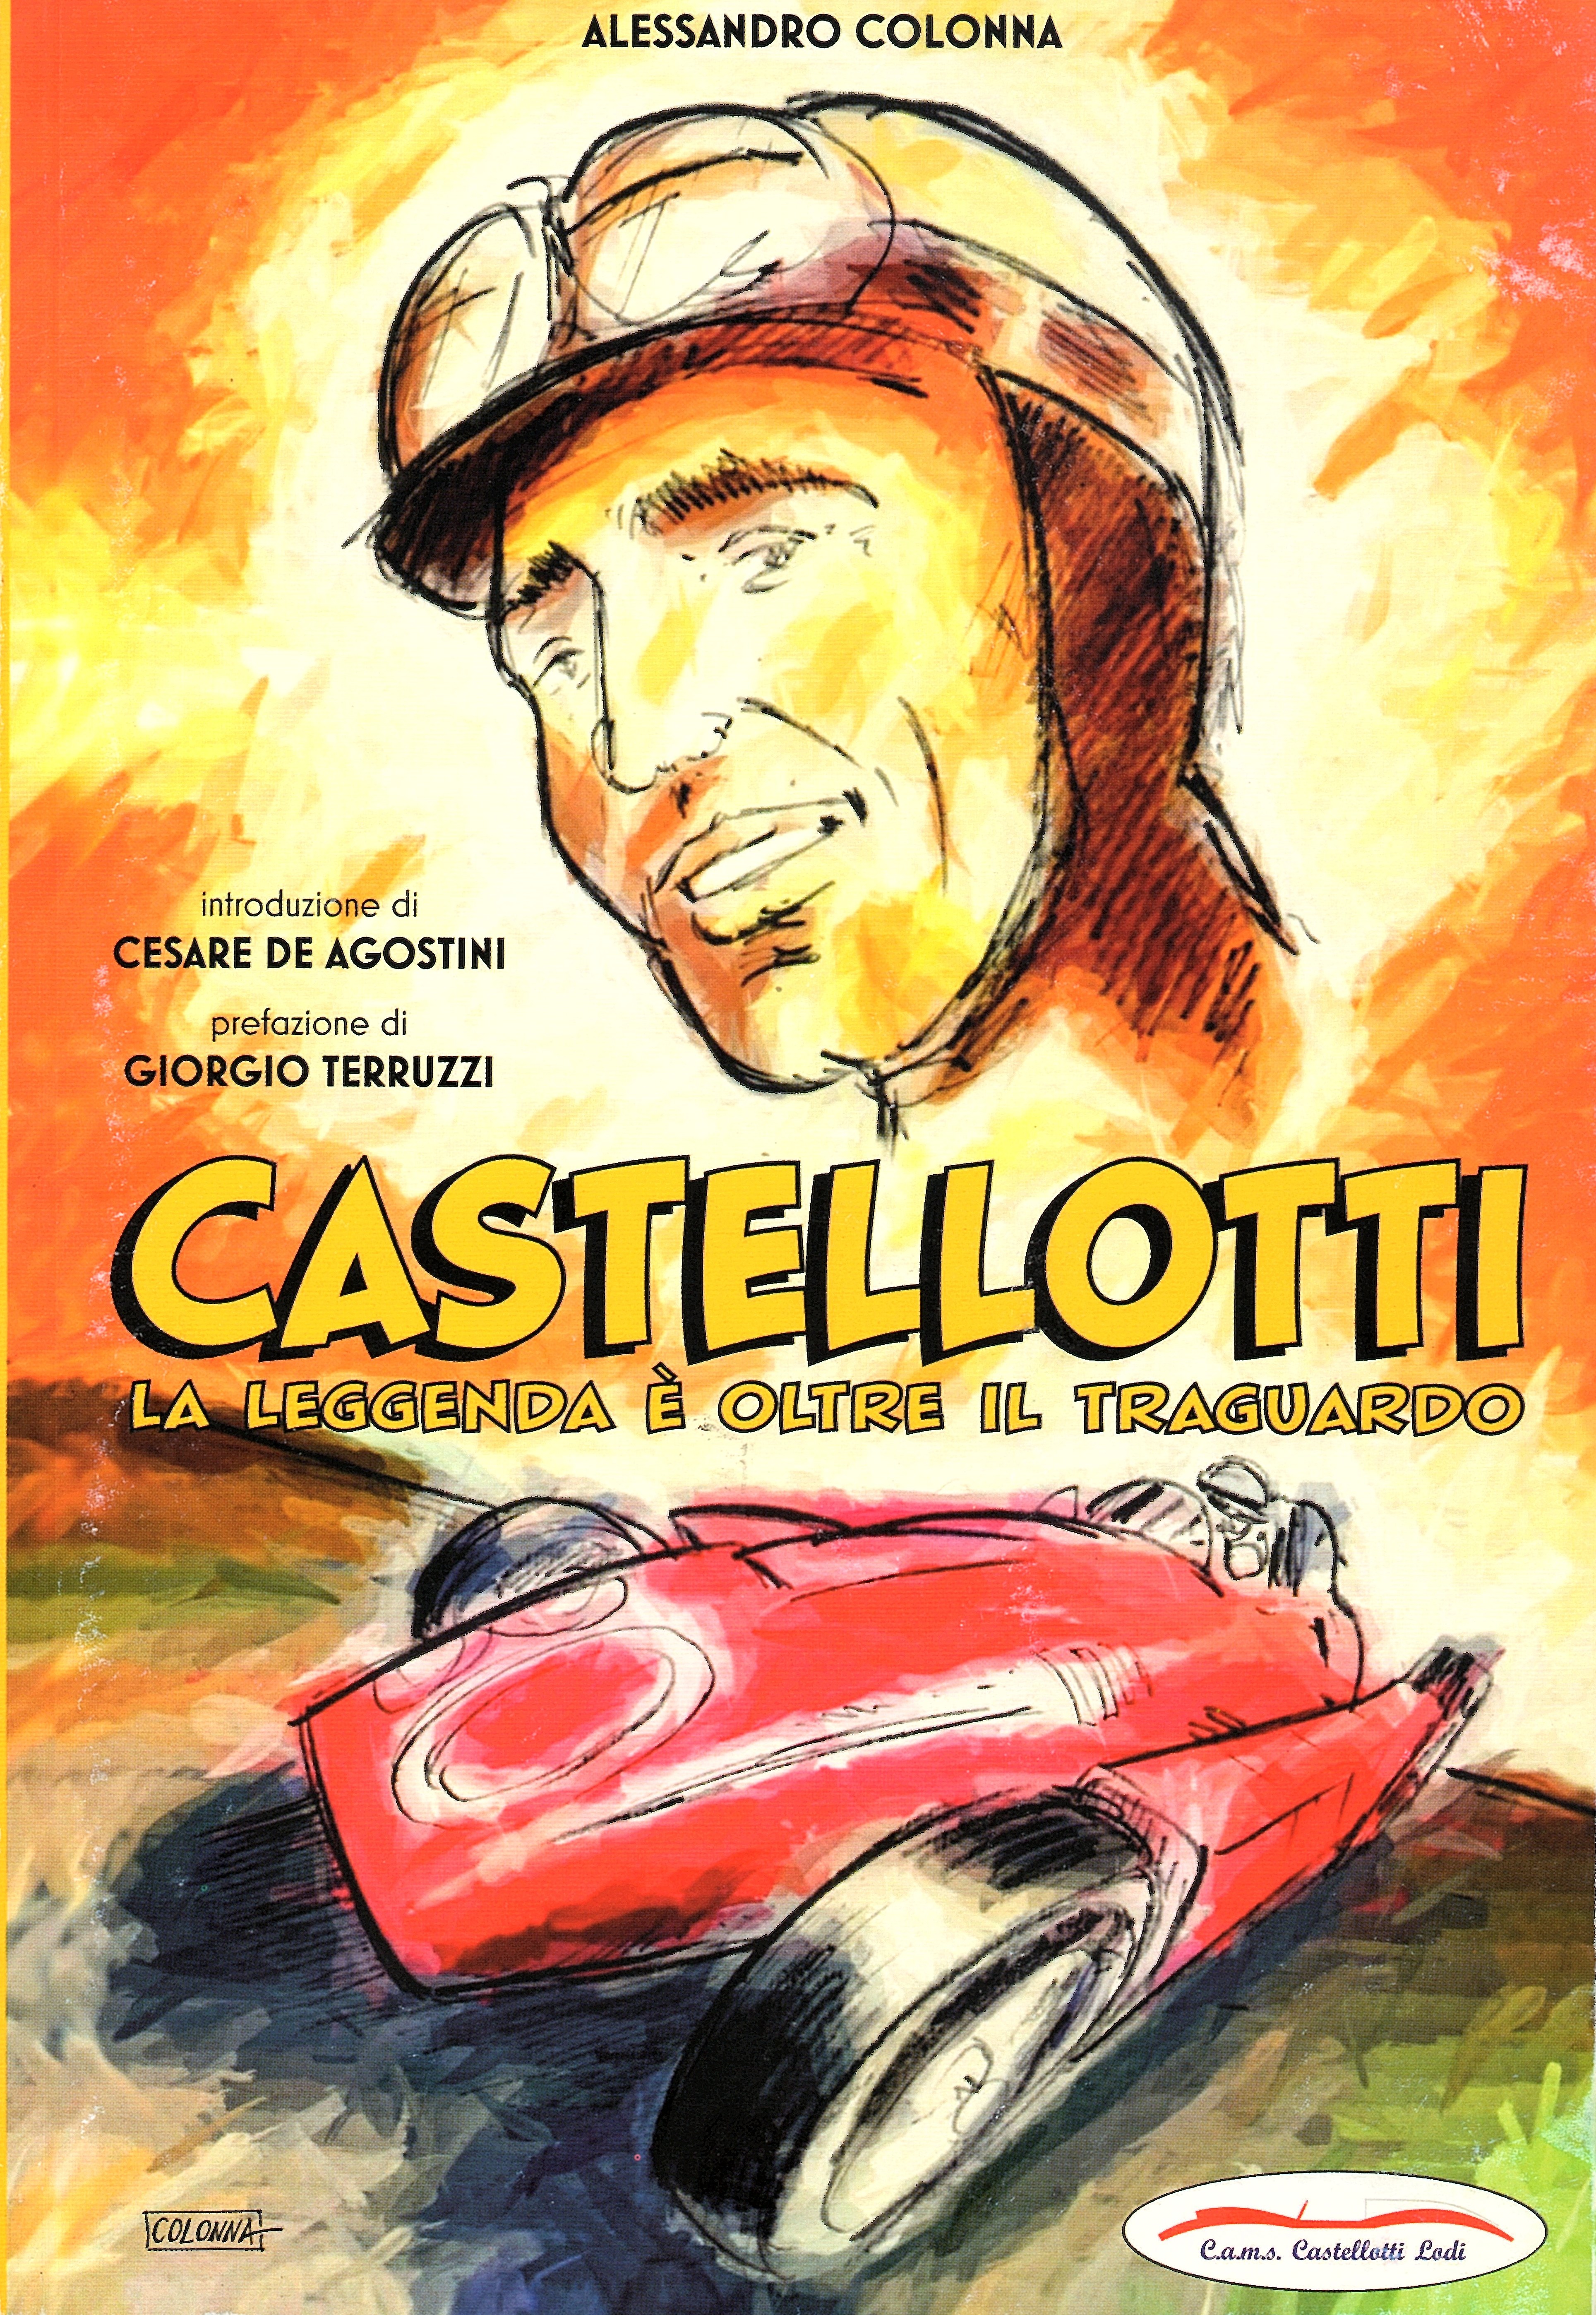 Presentazione del libro “Castellotti. La leggenda è oltre in traguardo”